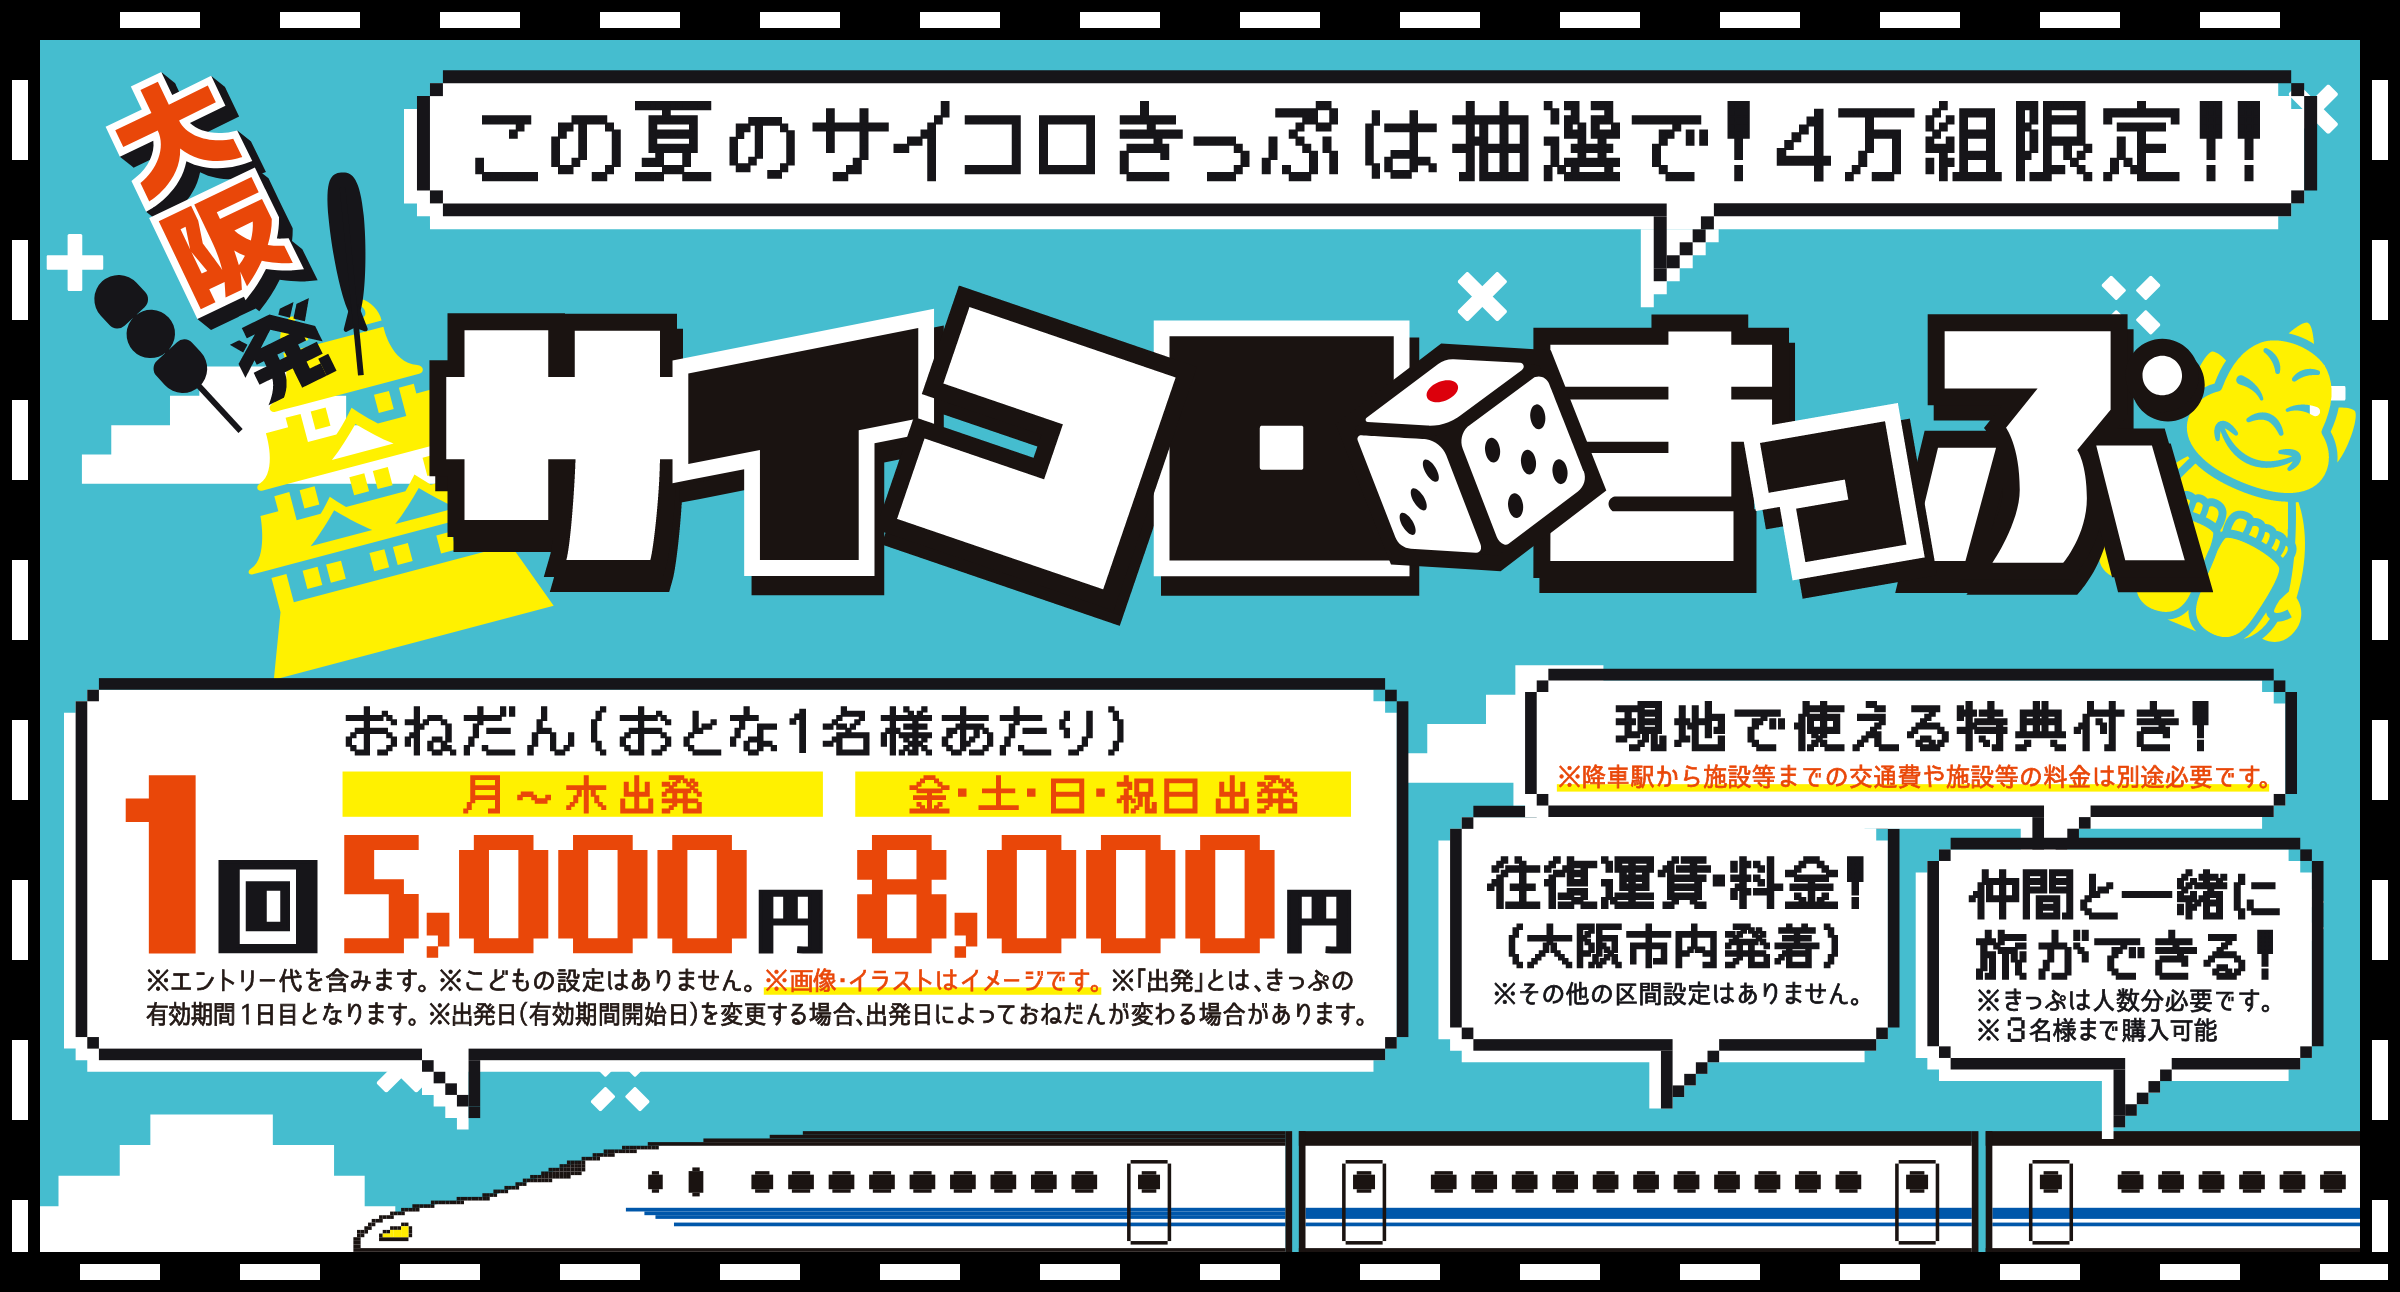 [閒聊] JR西日本推出「擲骰子車票」